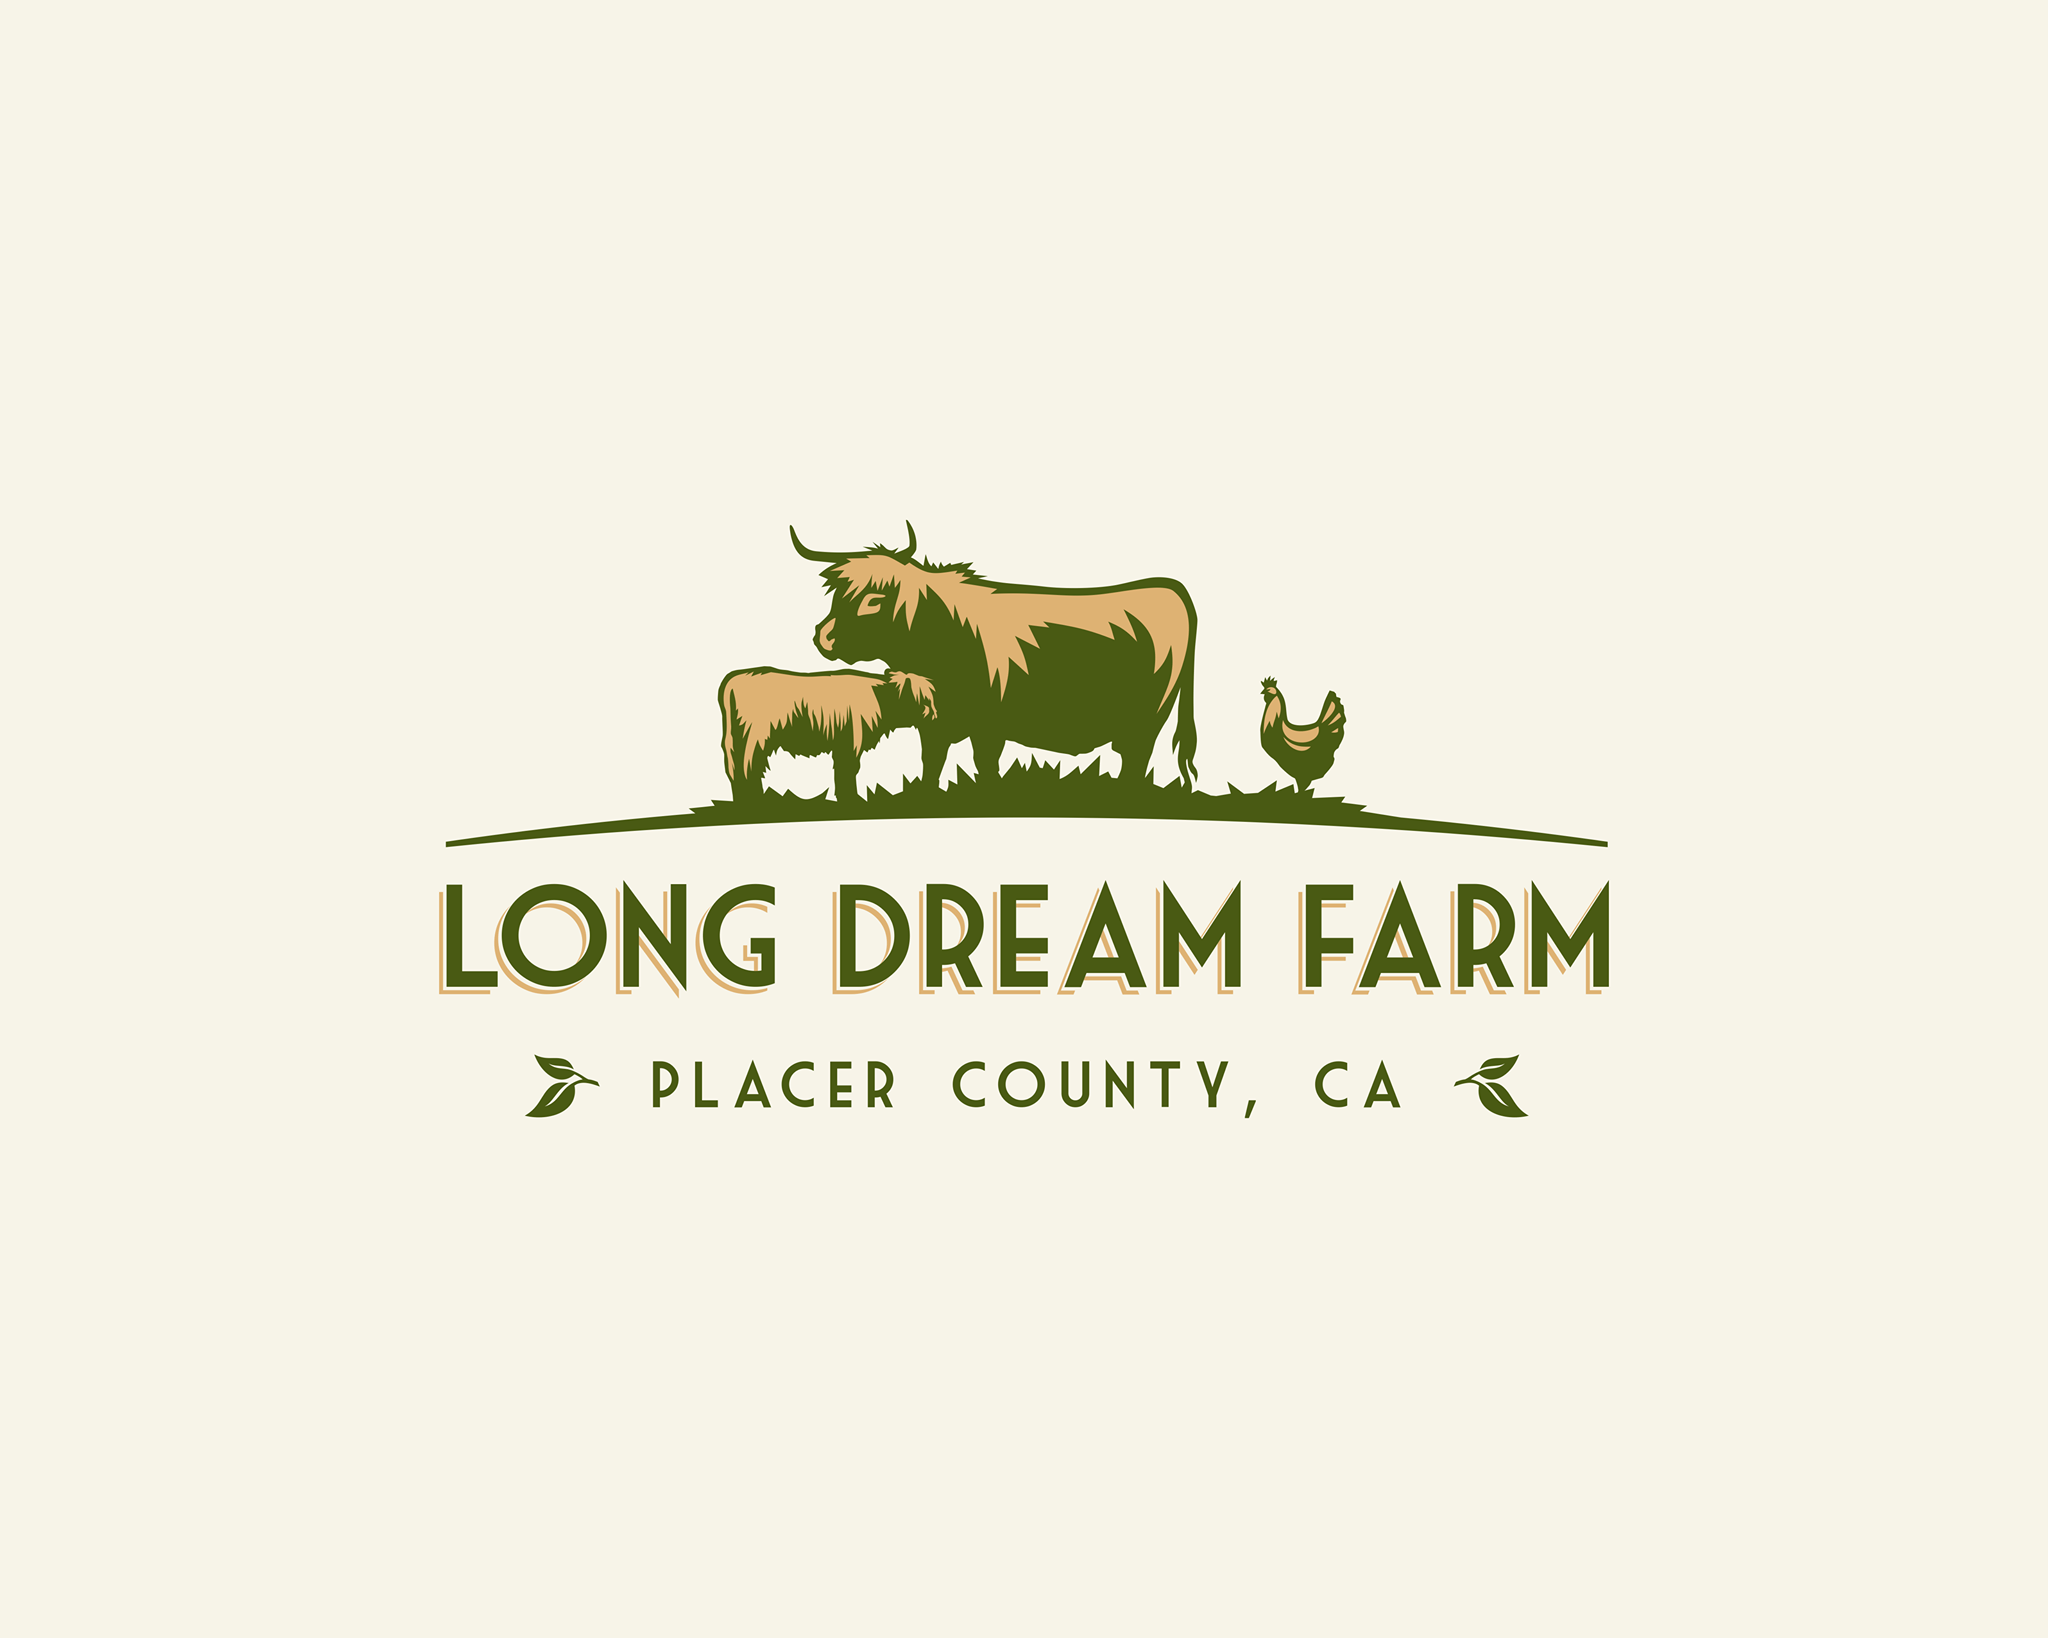 Company logo of Long Dream Farm